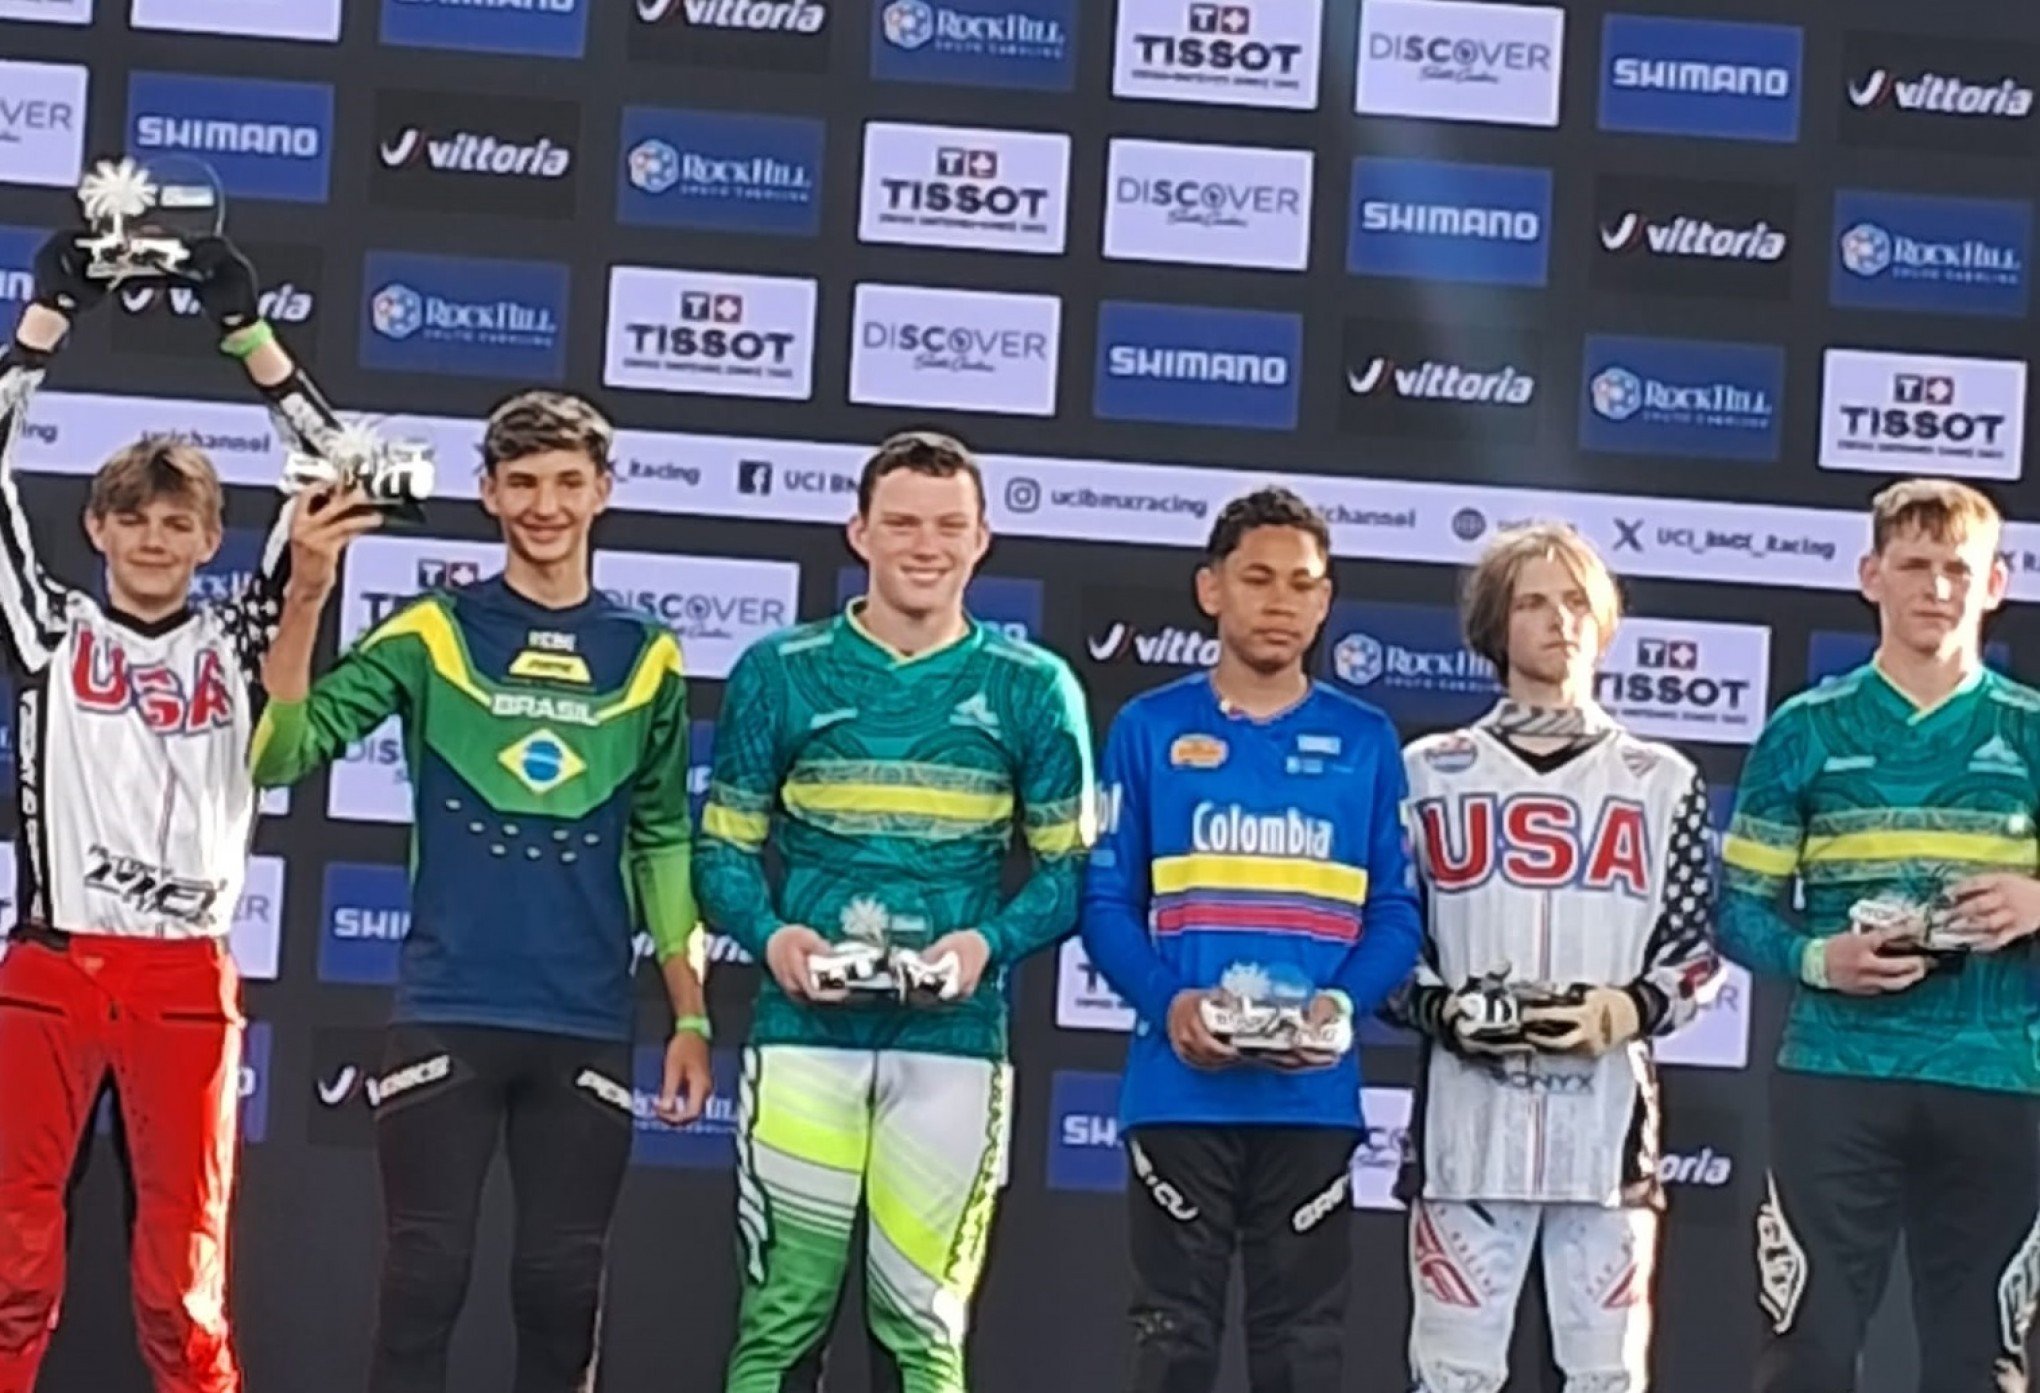 Pilotos de BMX da região disputam campeonato mundial nos EUA; Leonardo Nadal conquista medalha de bronze